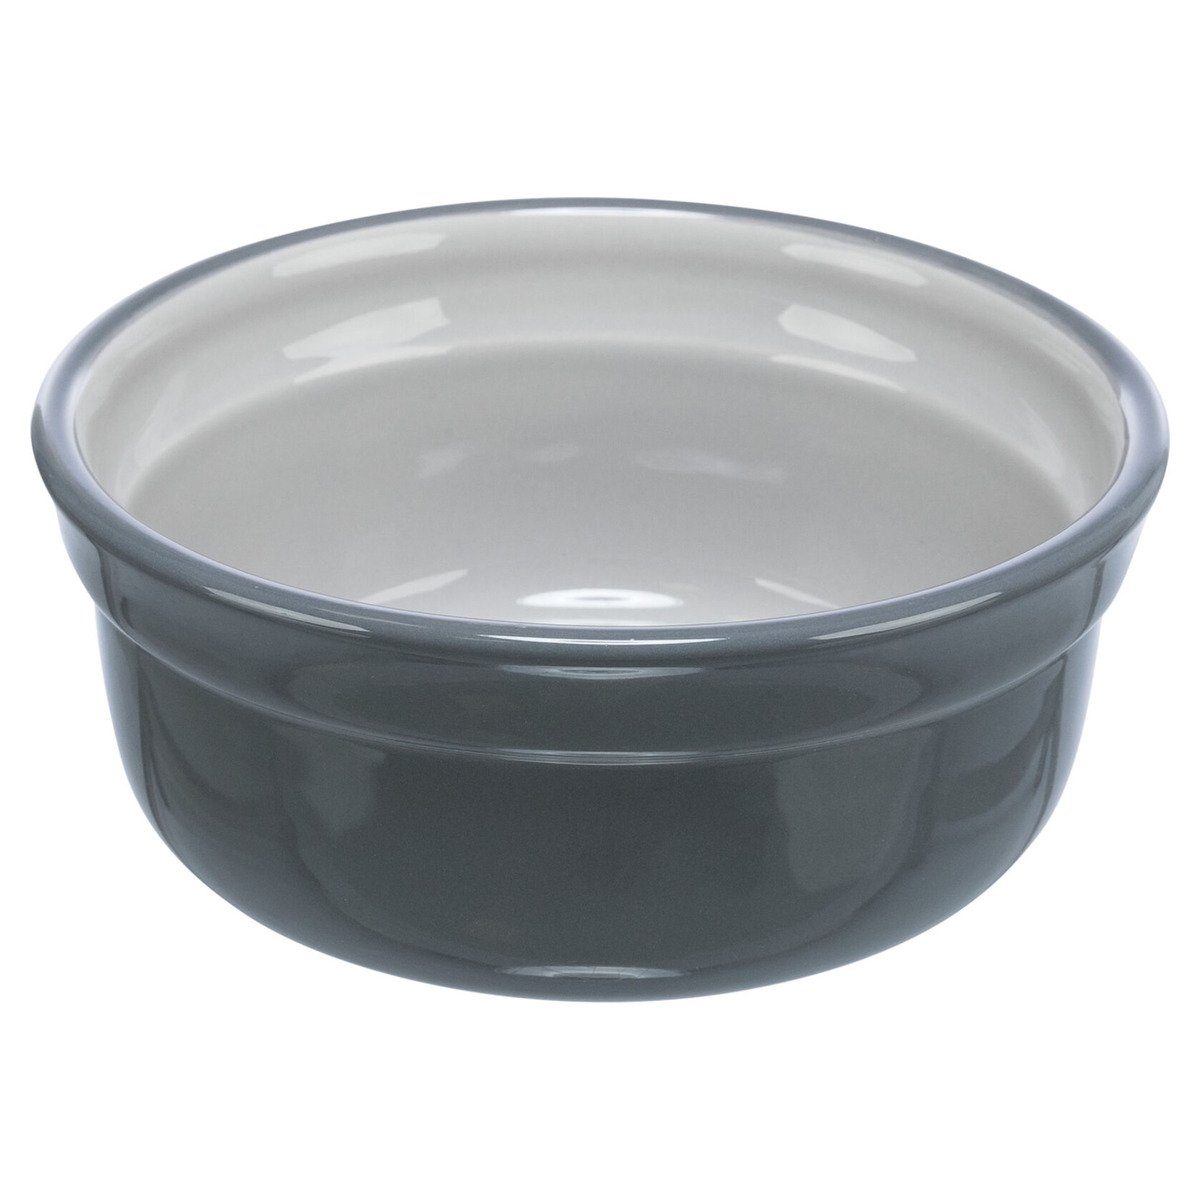 TRIXIE Futterbehälter Keramiknapf grau/hellgrau, Fassungsvermögen: 600 ml / Durchmesser: 15 cm